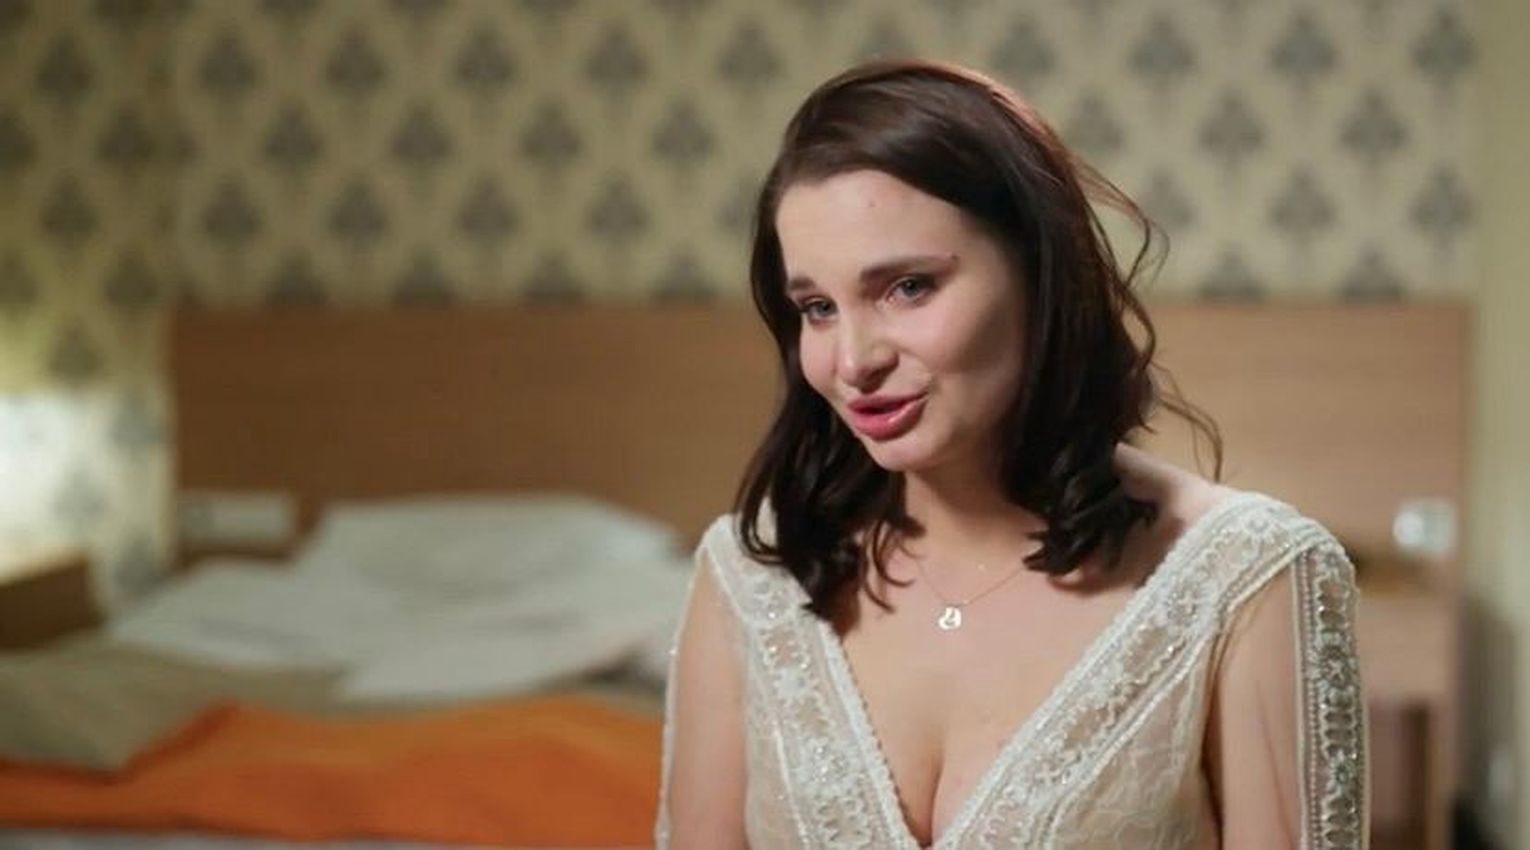 "Ślub od pierwszego wejrzenia": Justyna zdradziła za dużo? Wyraźnie sugeruje, że wciąż jest z Przemkiem